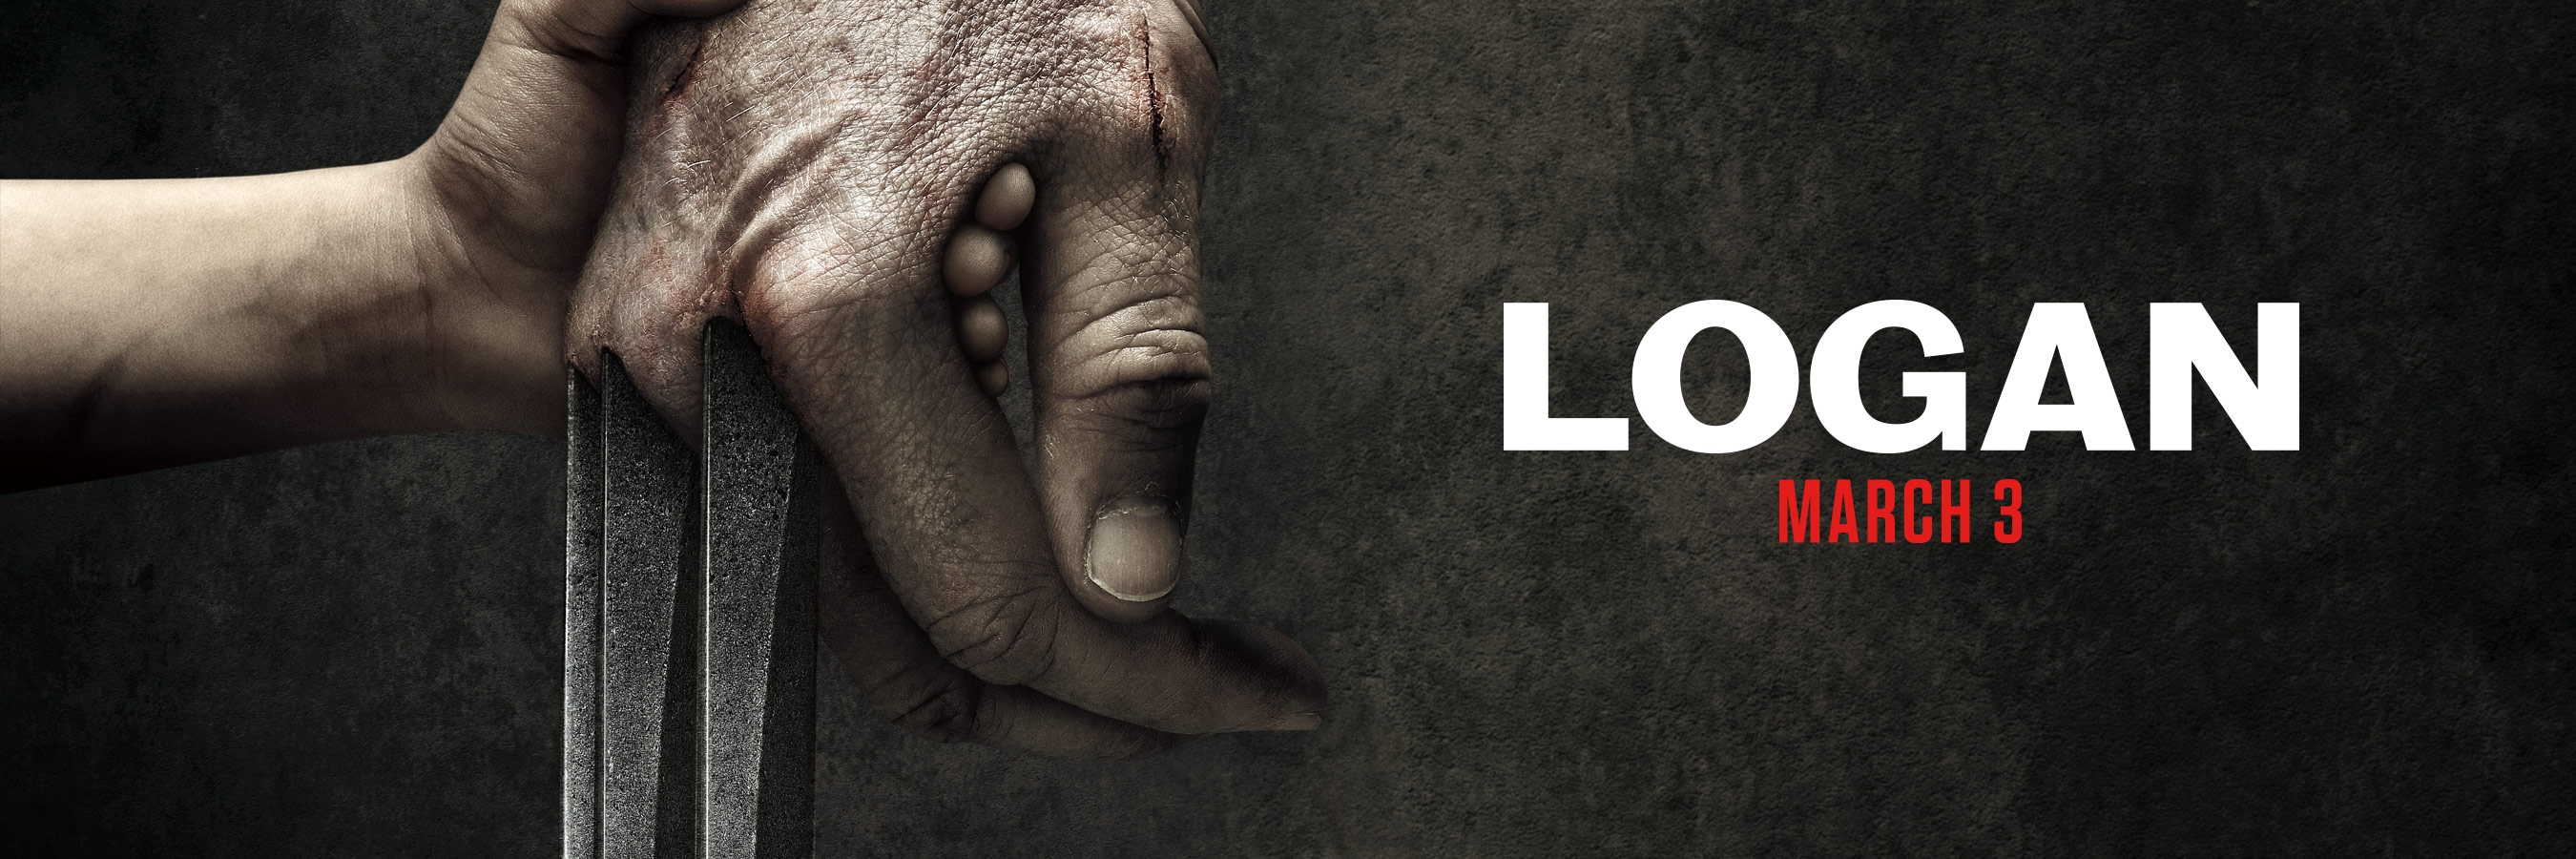 Final Logan Trailer online